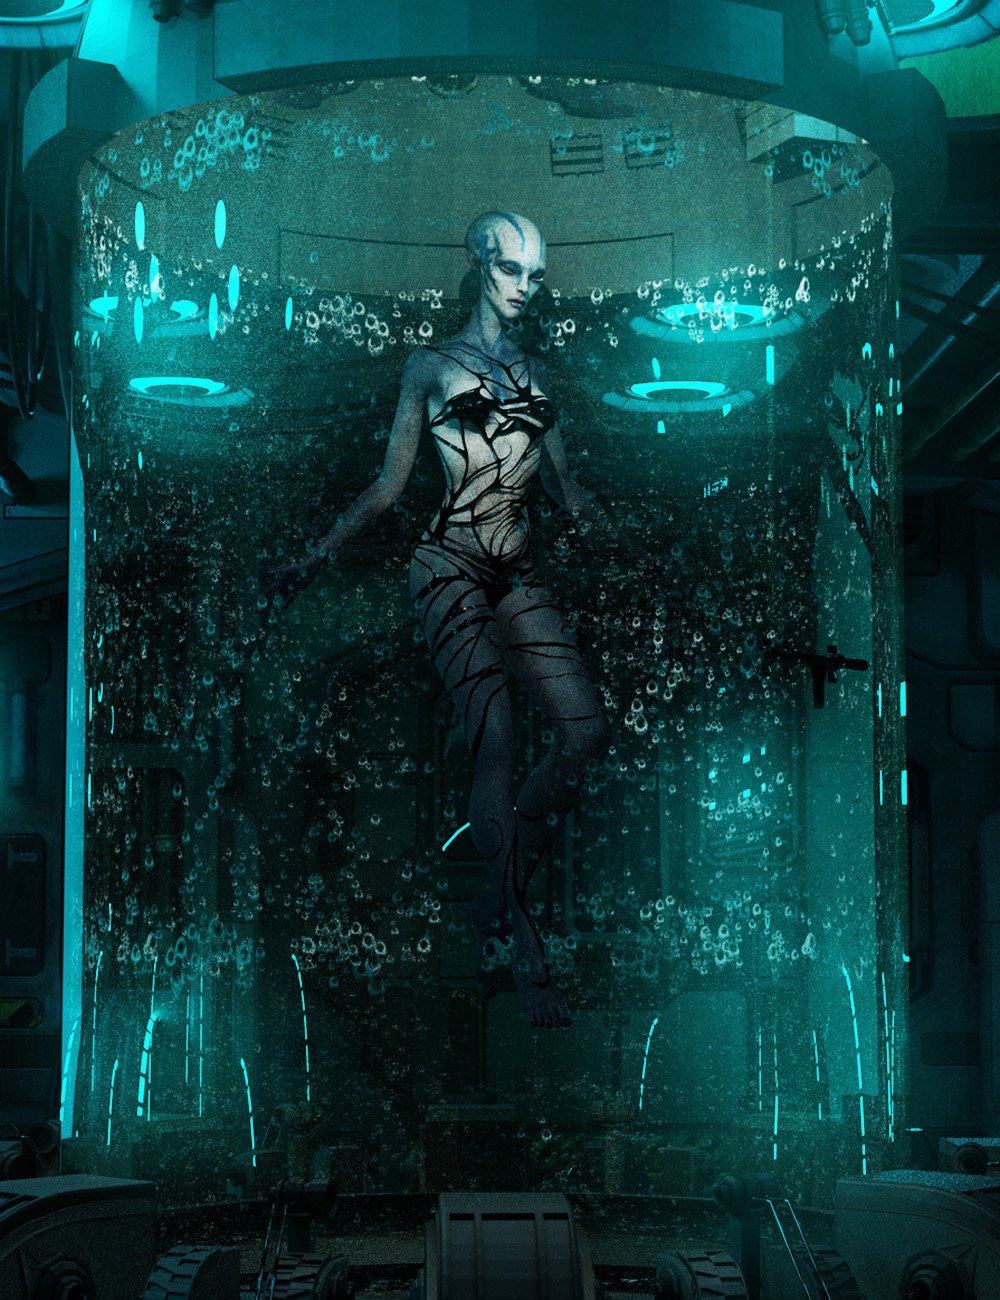 Nenana Alien HD for Genesis 8 Female by: Josh Crockett, 3D Models by Daz 3D